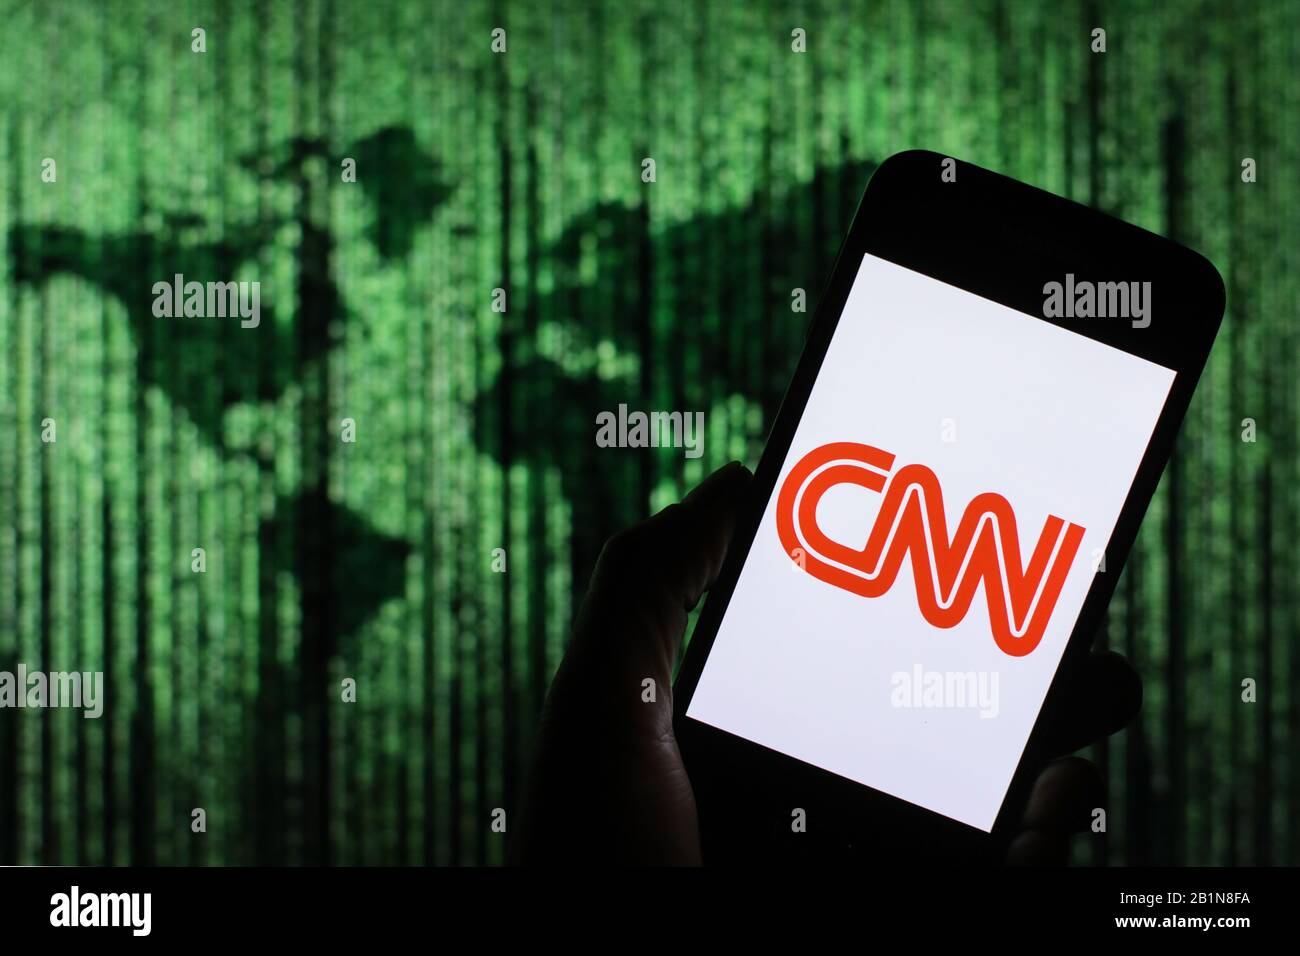 Das Firmenlogo der CNN-Mediennachrichten wird auf dem Smartphone-Bildschirm mit einer Matrix-ähnlichen Weltkarte angezeigt, die im Hintergrund verschwommen zu sehen ist Stockfoto